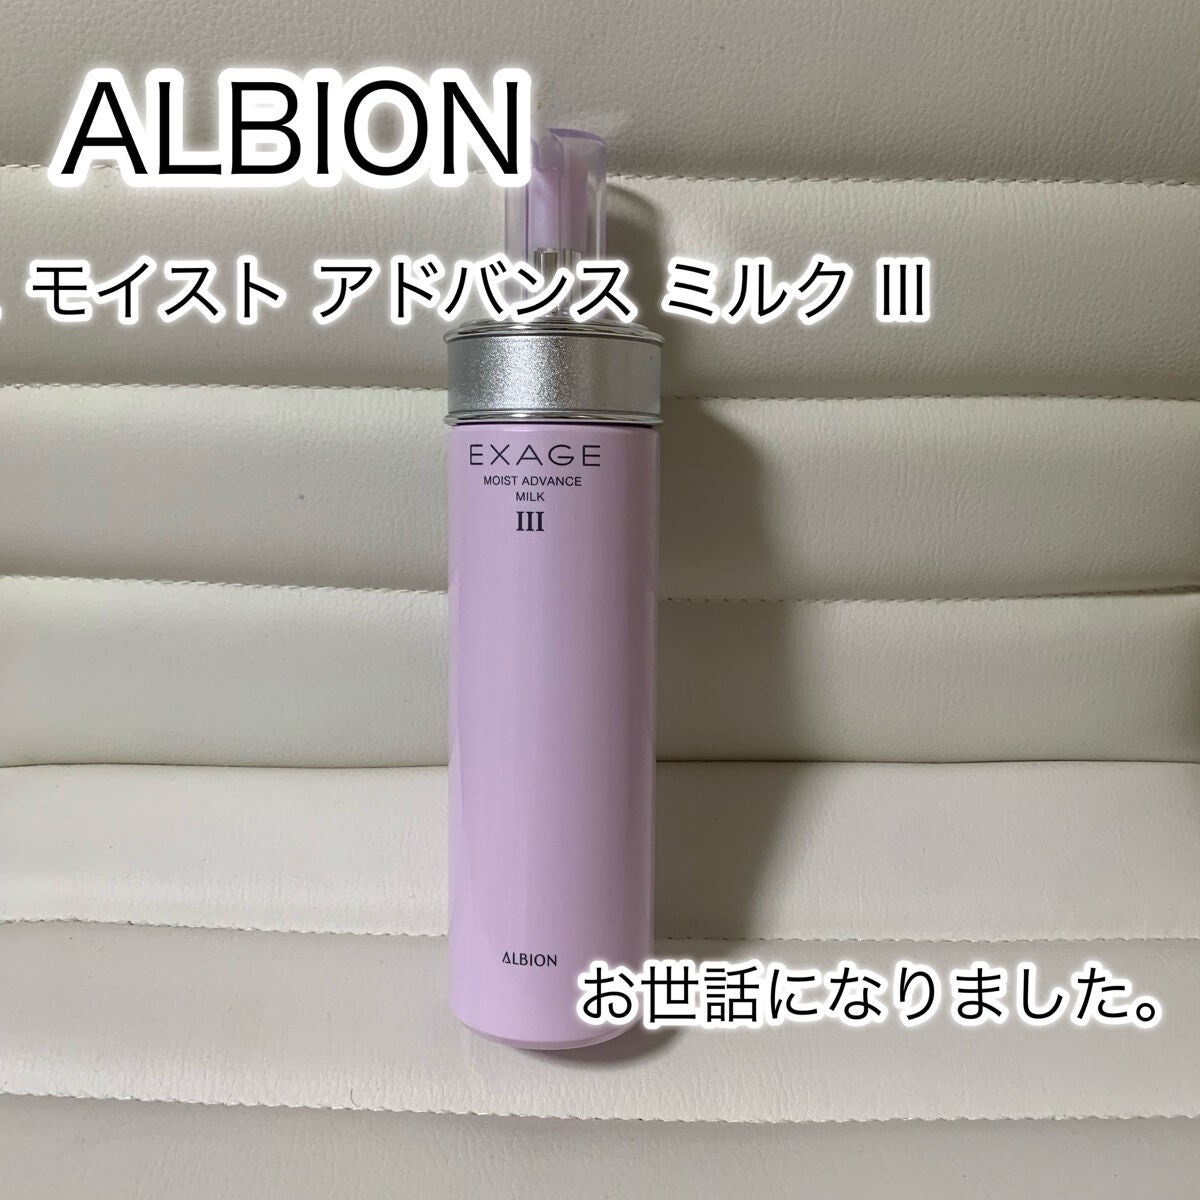 廃盤】アルビオン エクサージュ モイスト アドバンス ミルク III 200g-